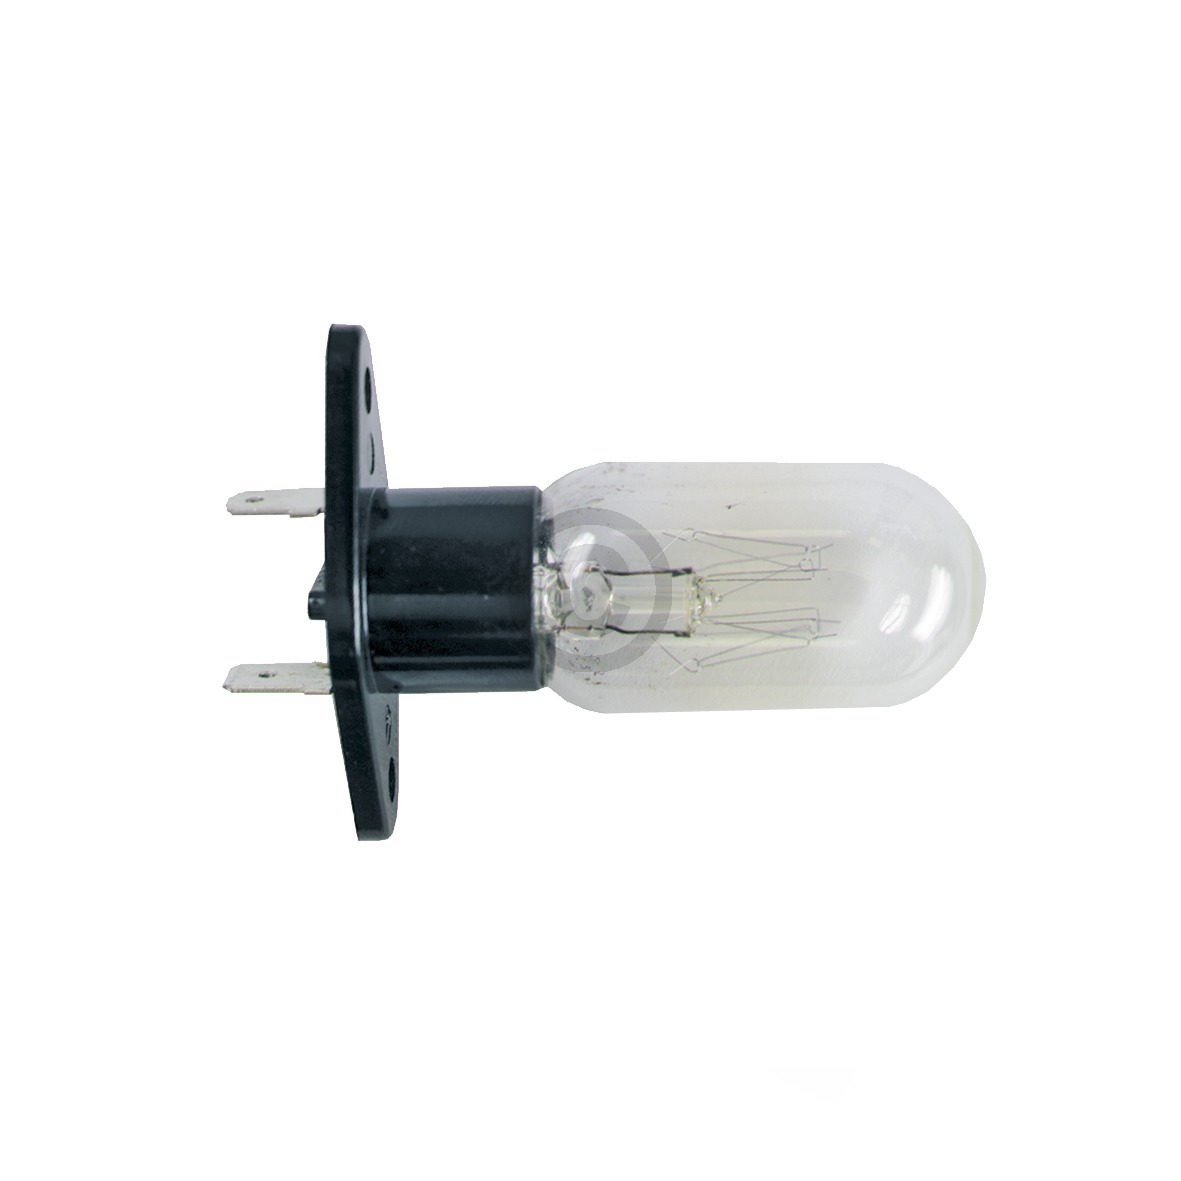 Lampe 25W 240V wie Whirlpool 481913428051 mit Befestigungssockel 2x6,3mmAMP für Mikrowelle